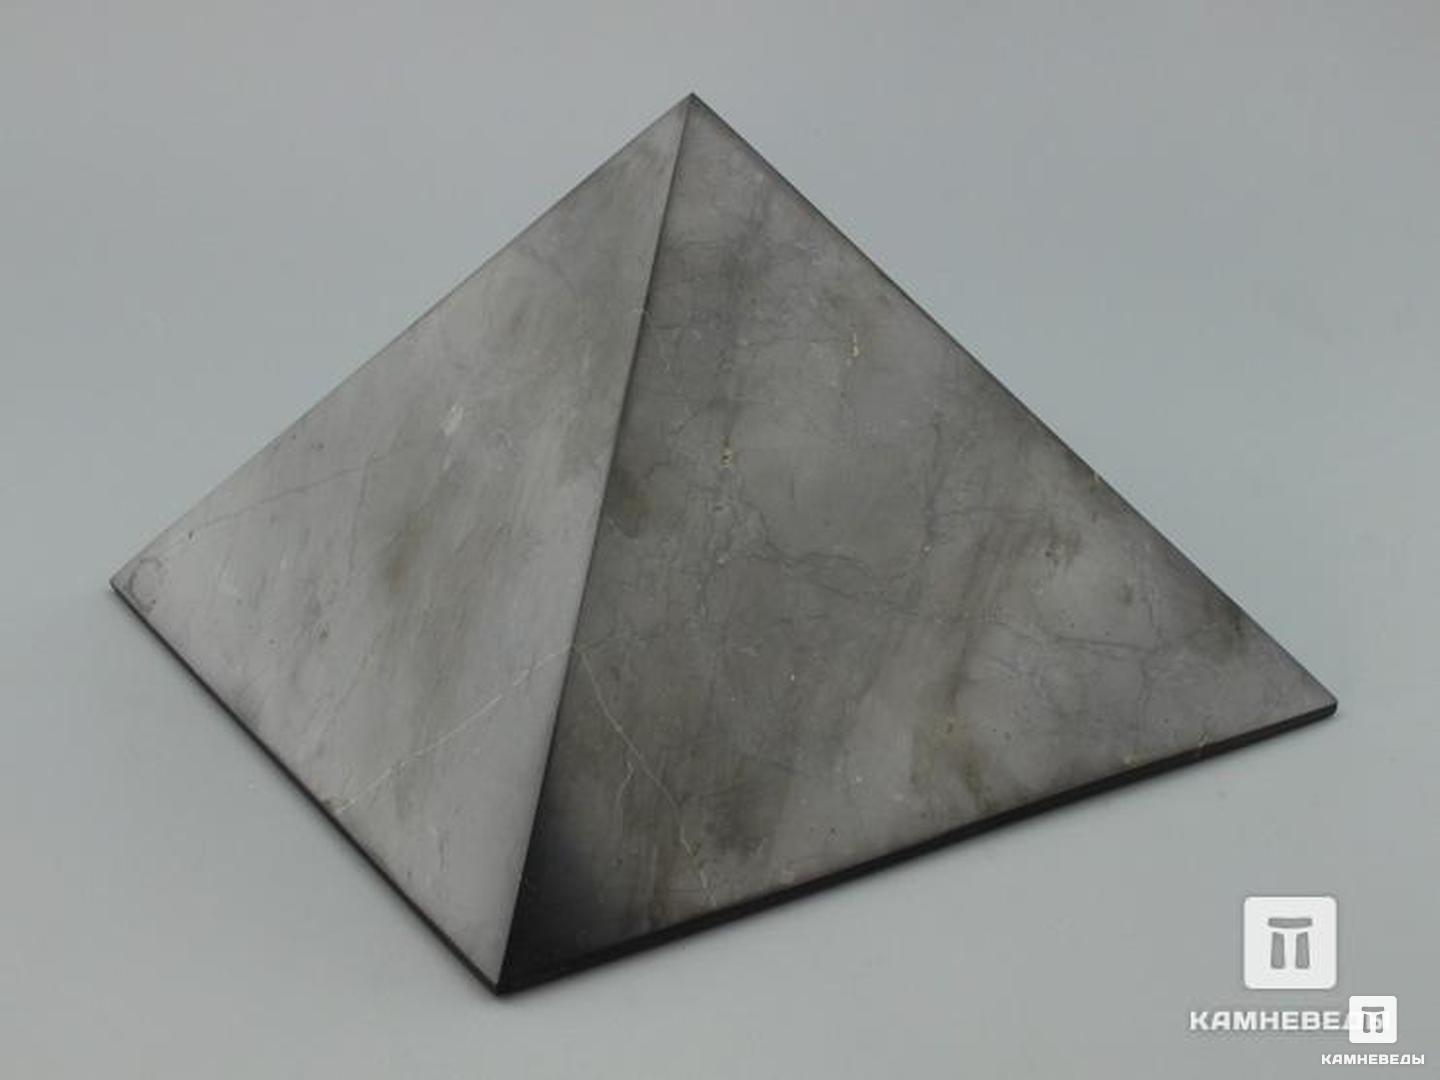 Пирамида из шунгита, полированная 15х15 см tommy hilfiger 1890 s kb7